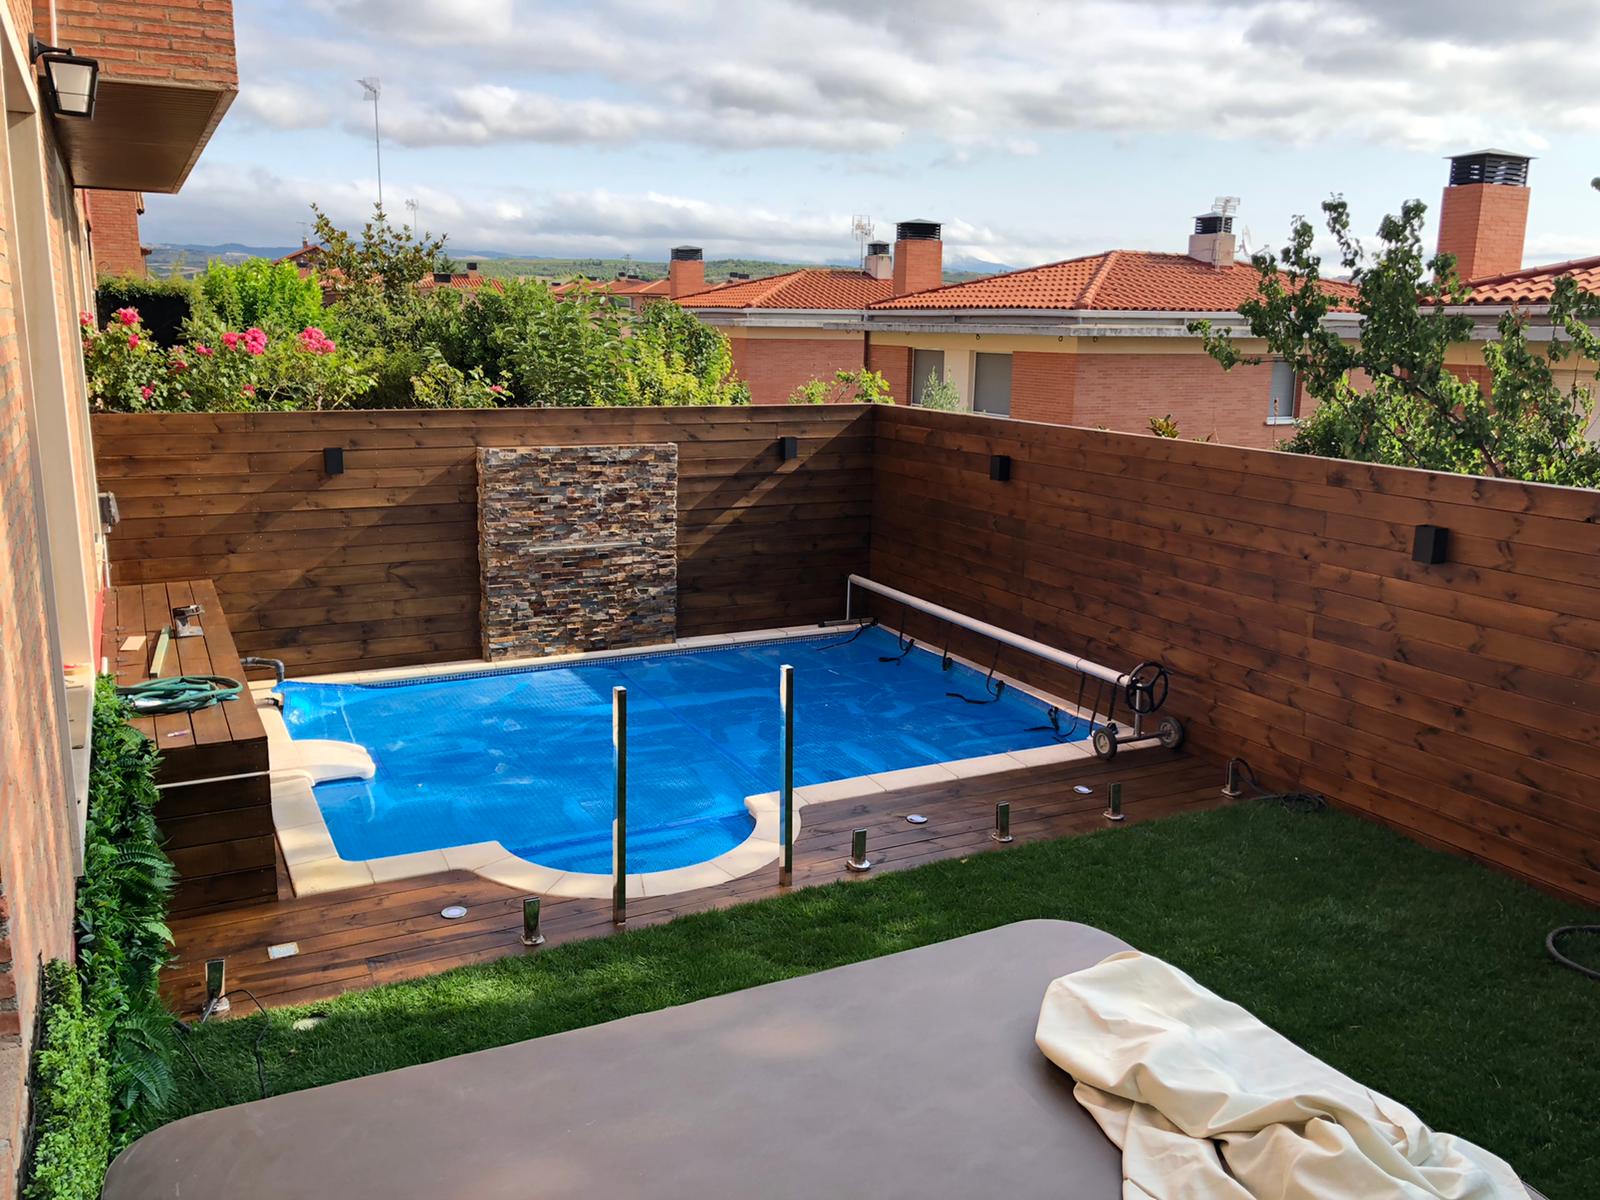 Reforma de Jardín con piscina todo en Madera - Mas Madera